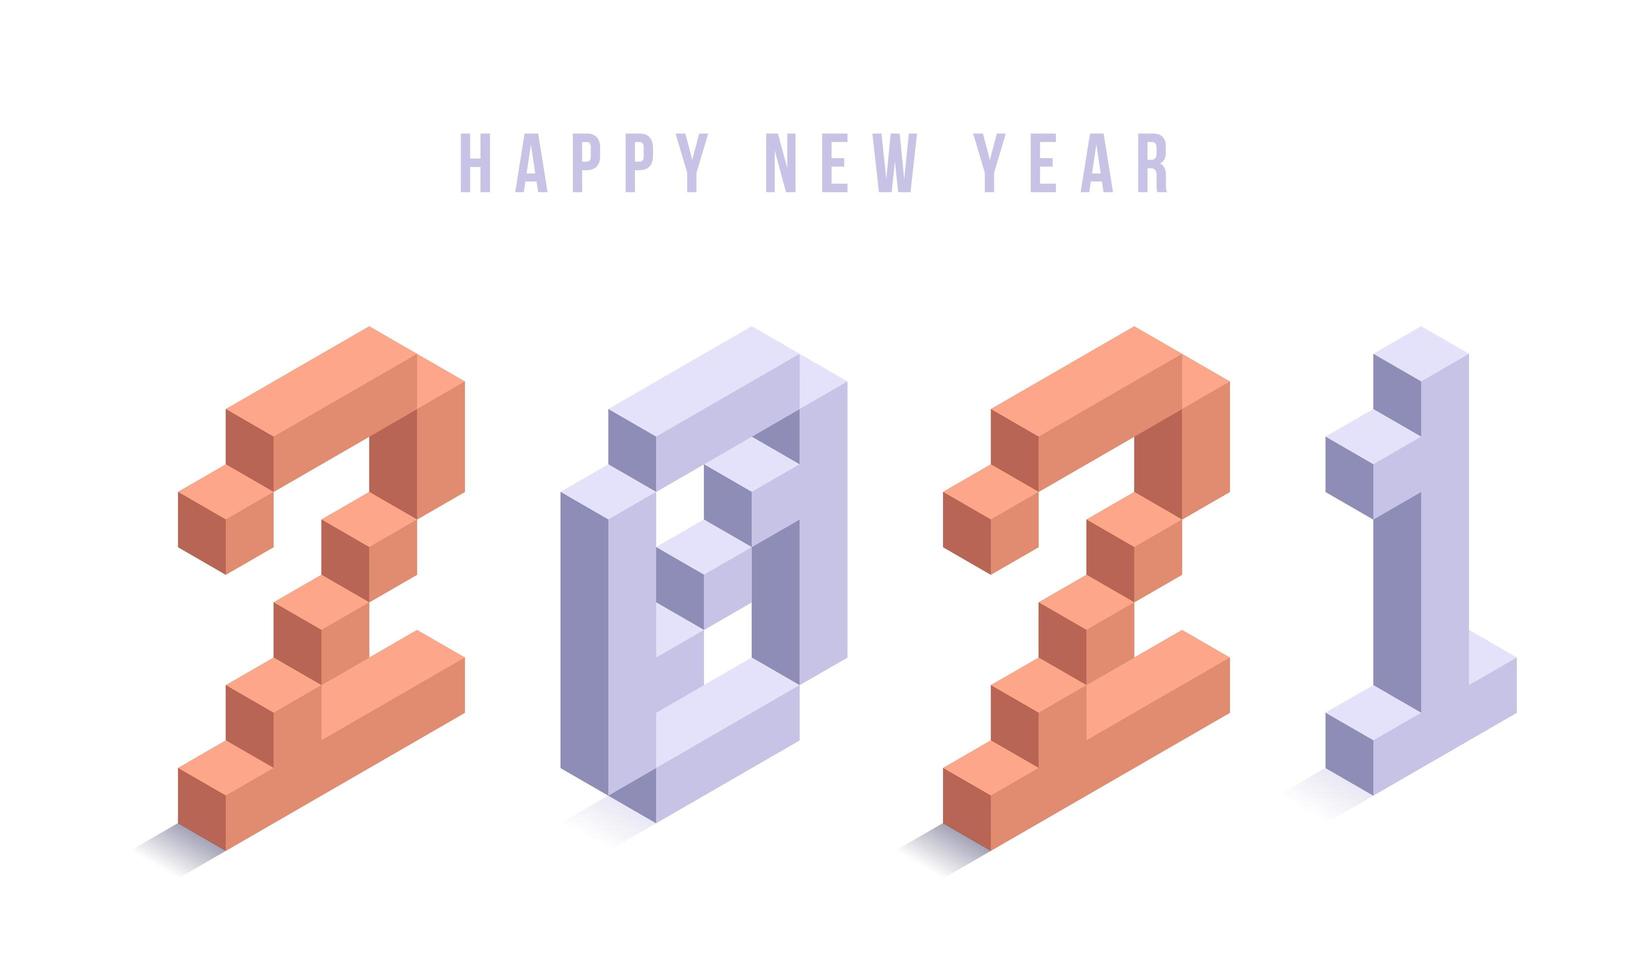 feliz año nuevo 2021 tipografía isométrica vector